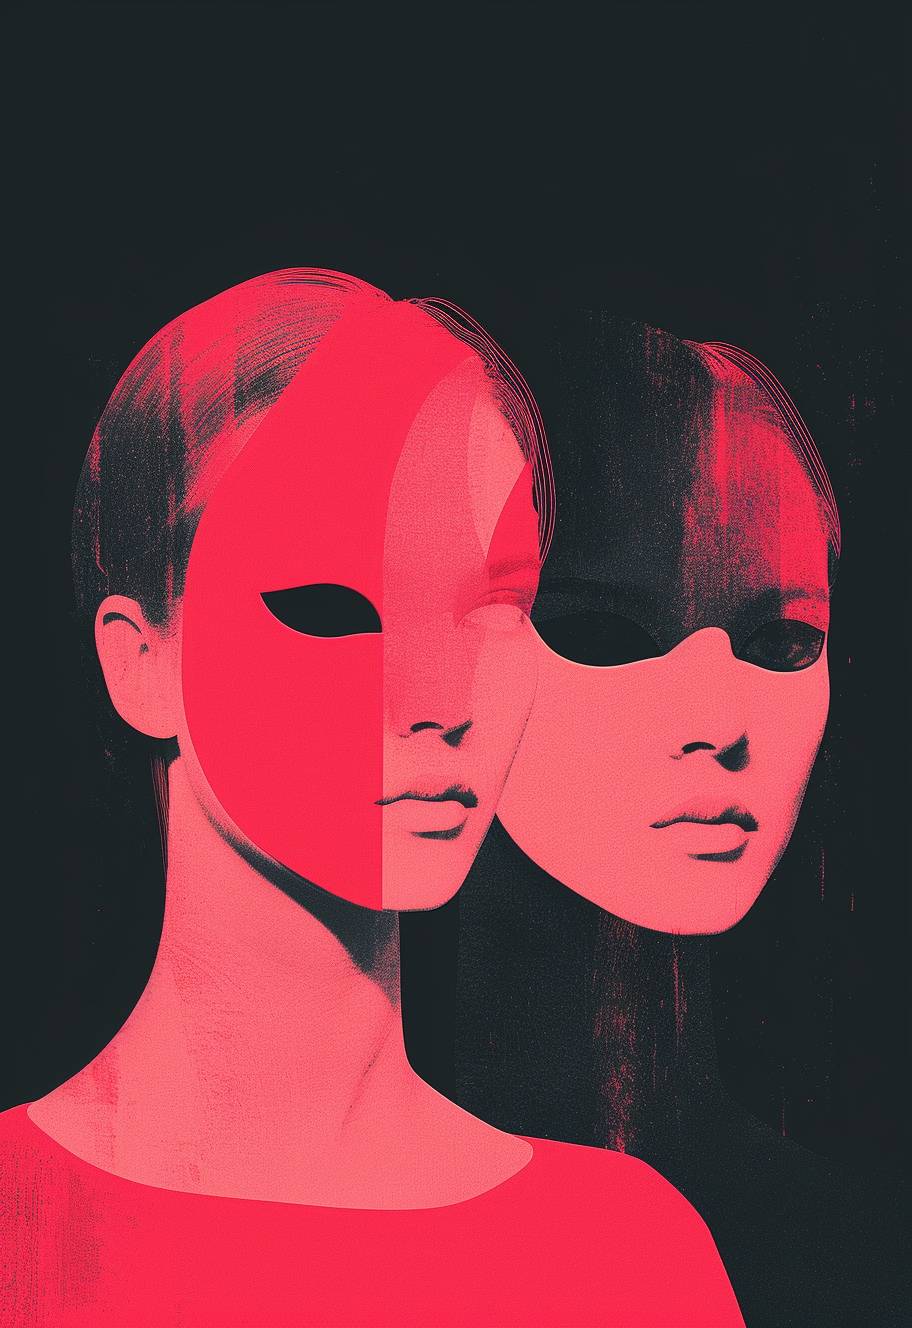 非現実的なスタイルで、顔にマスクをつけた2人の女性を描いたミニマリストのレトロイラスト、ピンクと赤のカラーパレット、濃い対比の黒い背景、シンプルな形状を特徴としたミニマリズム